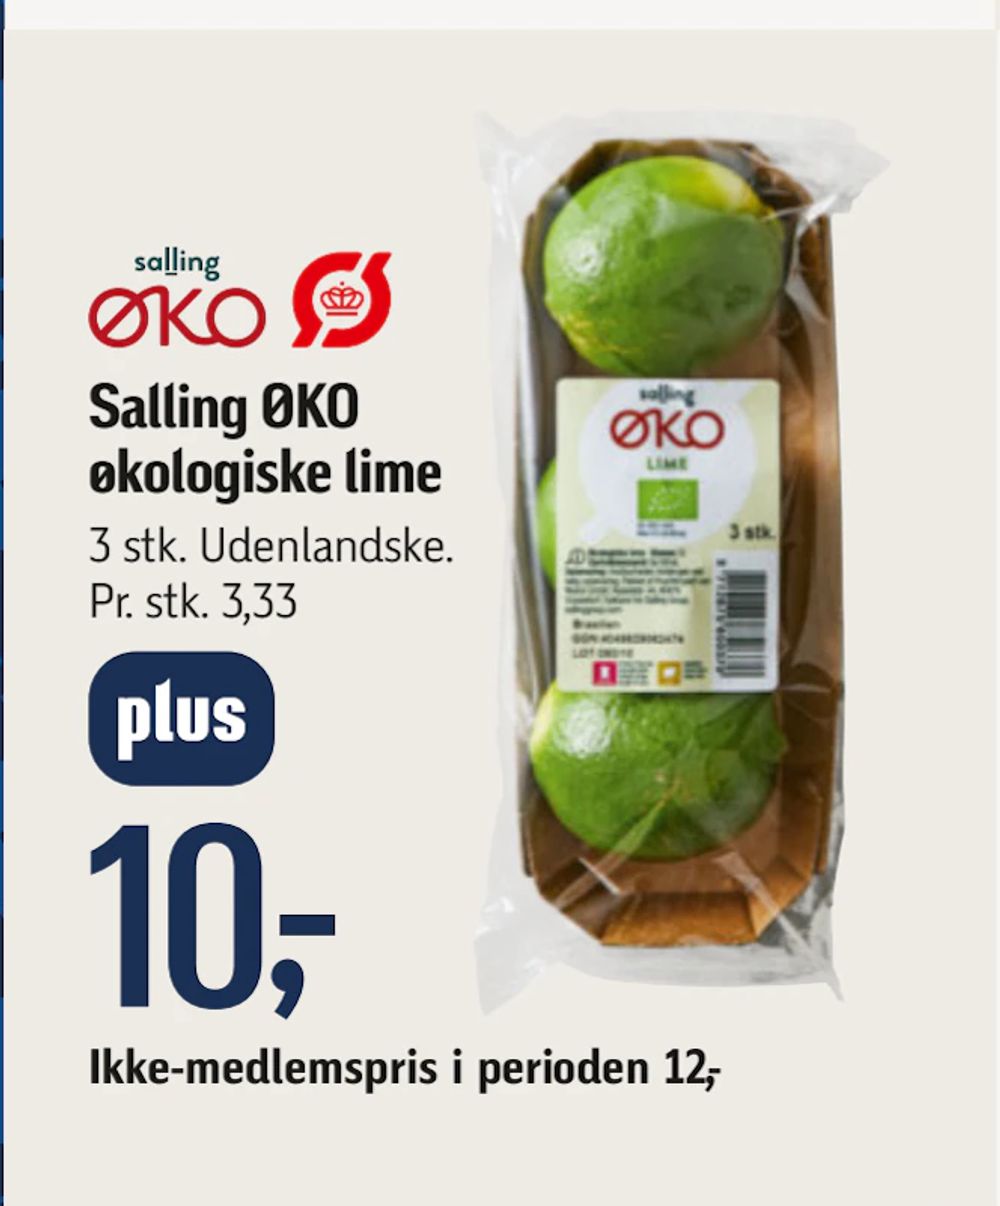 Tilbud på Salling ØKO økologiske lime fra føtex til 12 kr.